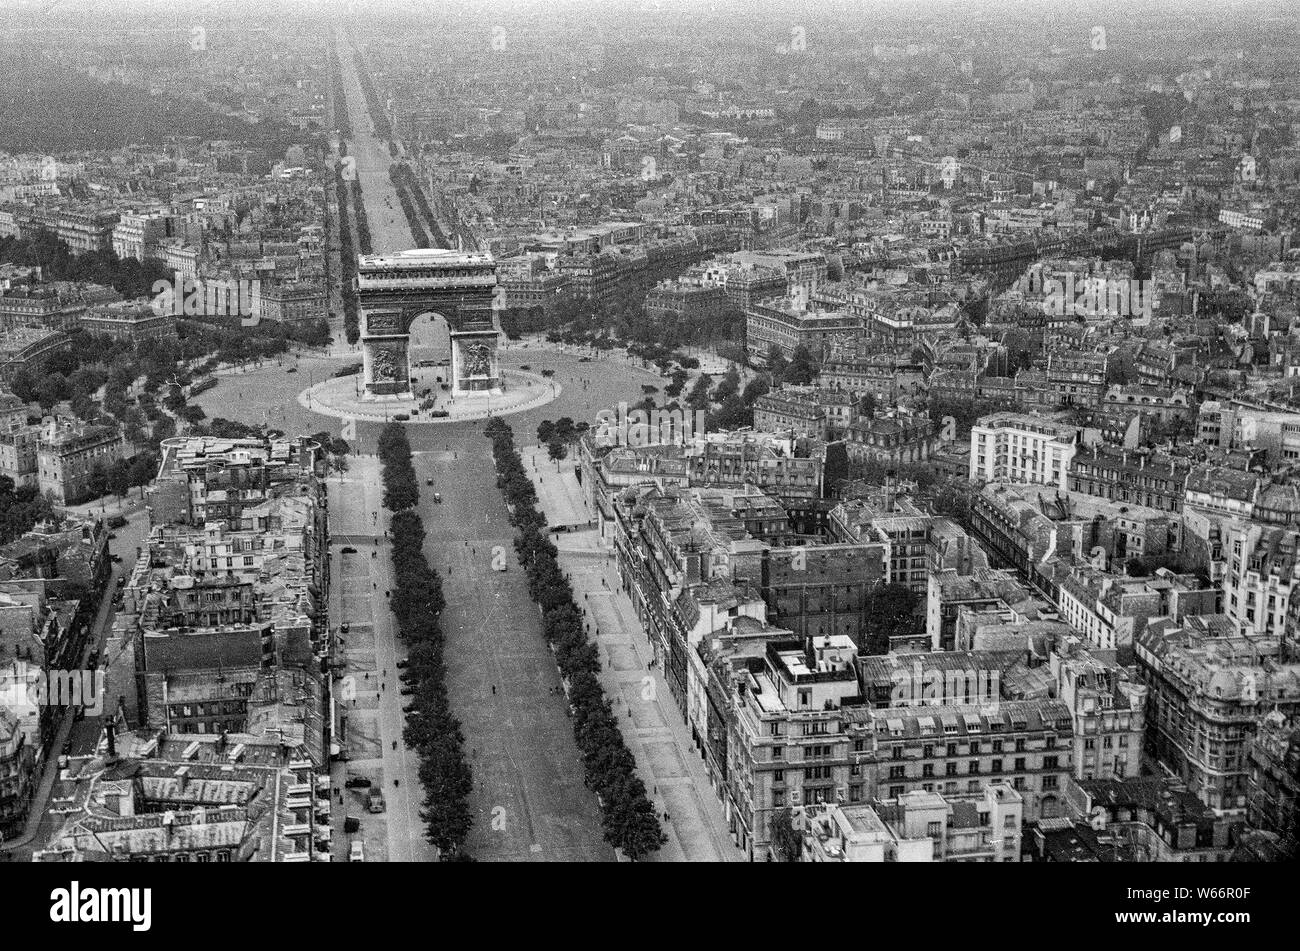 Paris, Frankreich -07-12-1940 einzigartige historische Luftaufnahmen der Place de lètoile und Triumphbogen, von einem Deutschen Aerial reconnaissance Fotograf während der deutschen Besetzung Frankreichs genommen Stockfoto